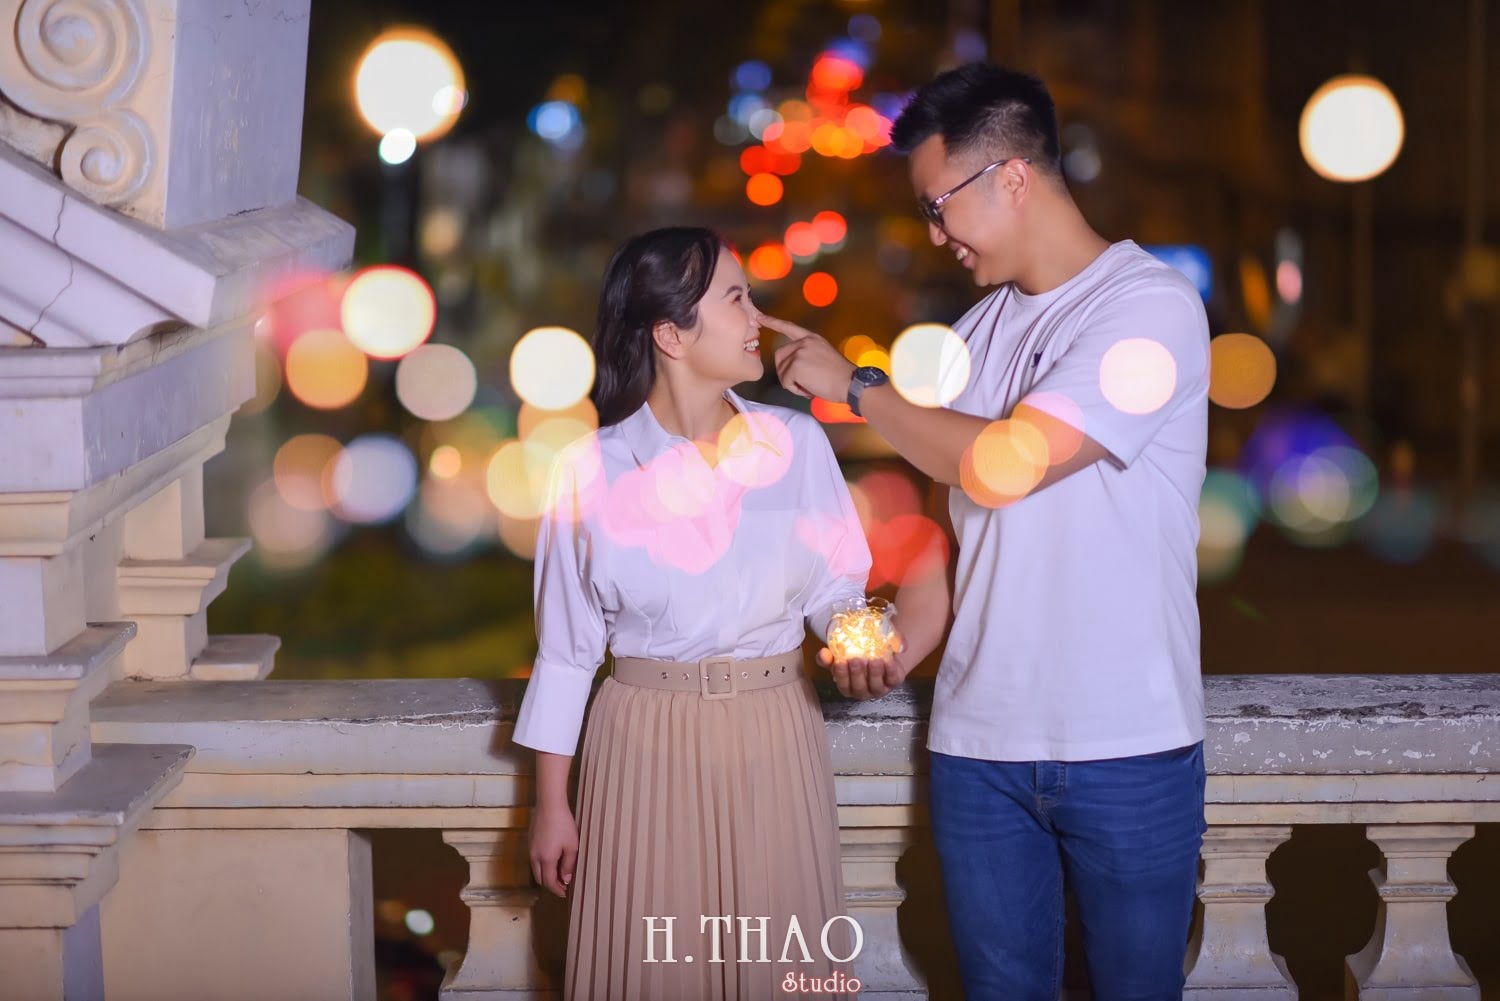 Anh chup couple ban dem 7 min - #2 Ý tưởng chụp ảnh ban đêm đẹp lung linh – HThao Studio